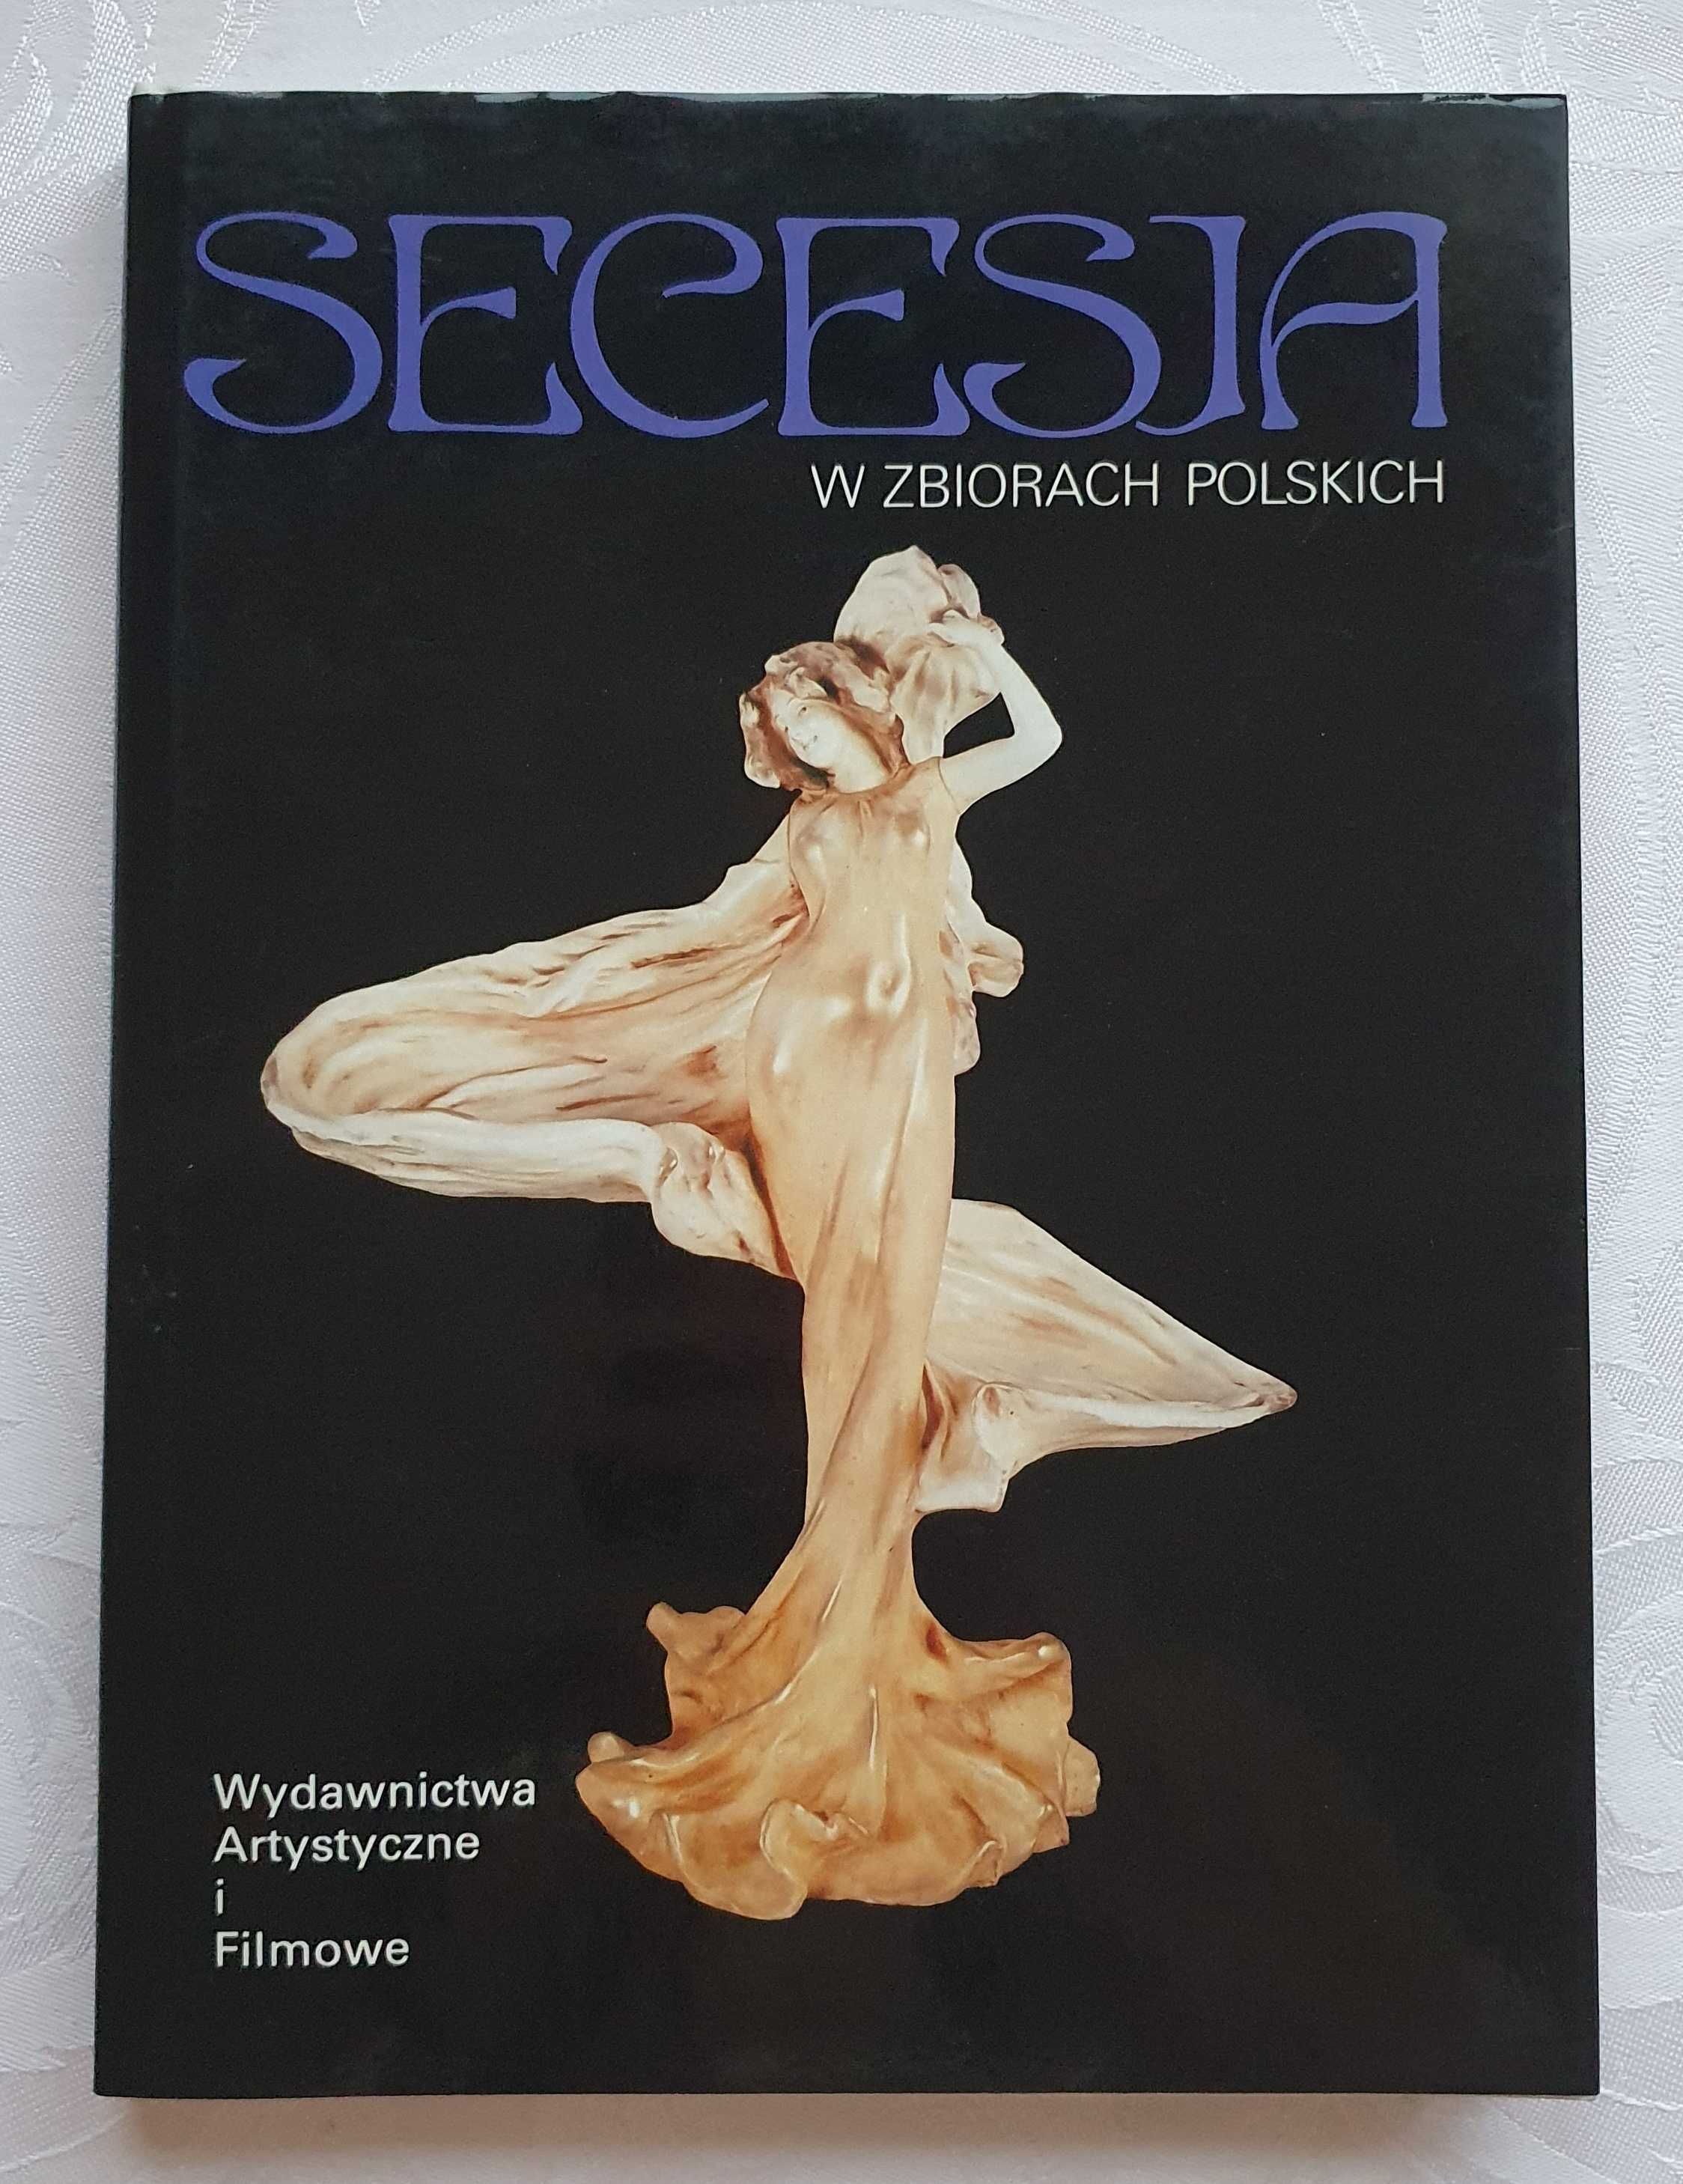 Album "Secesja w zbiorach polskich" Paweł Banaś 1990 r.